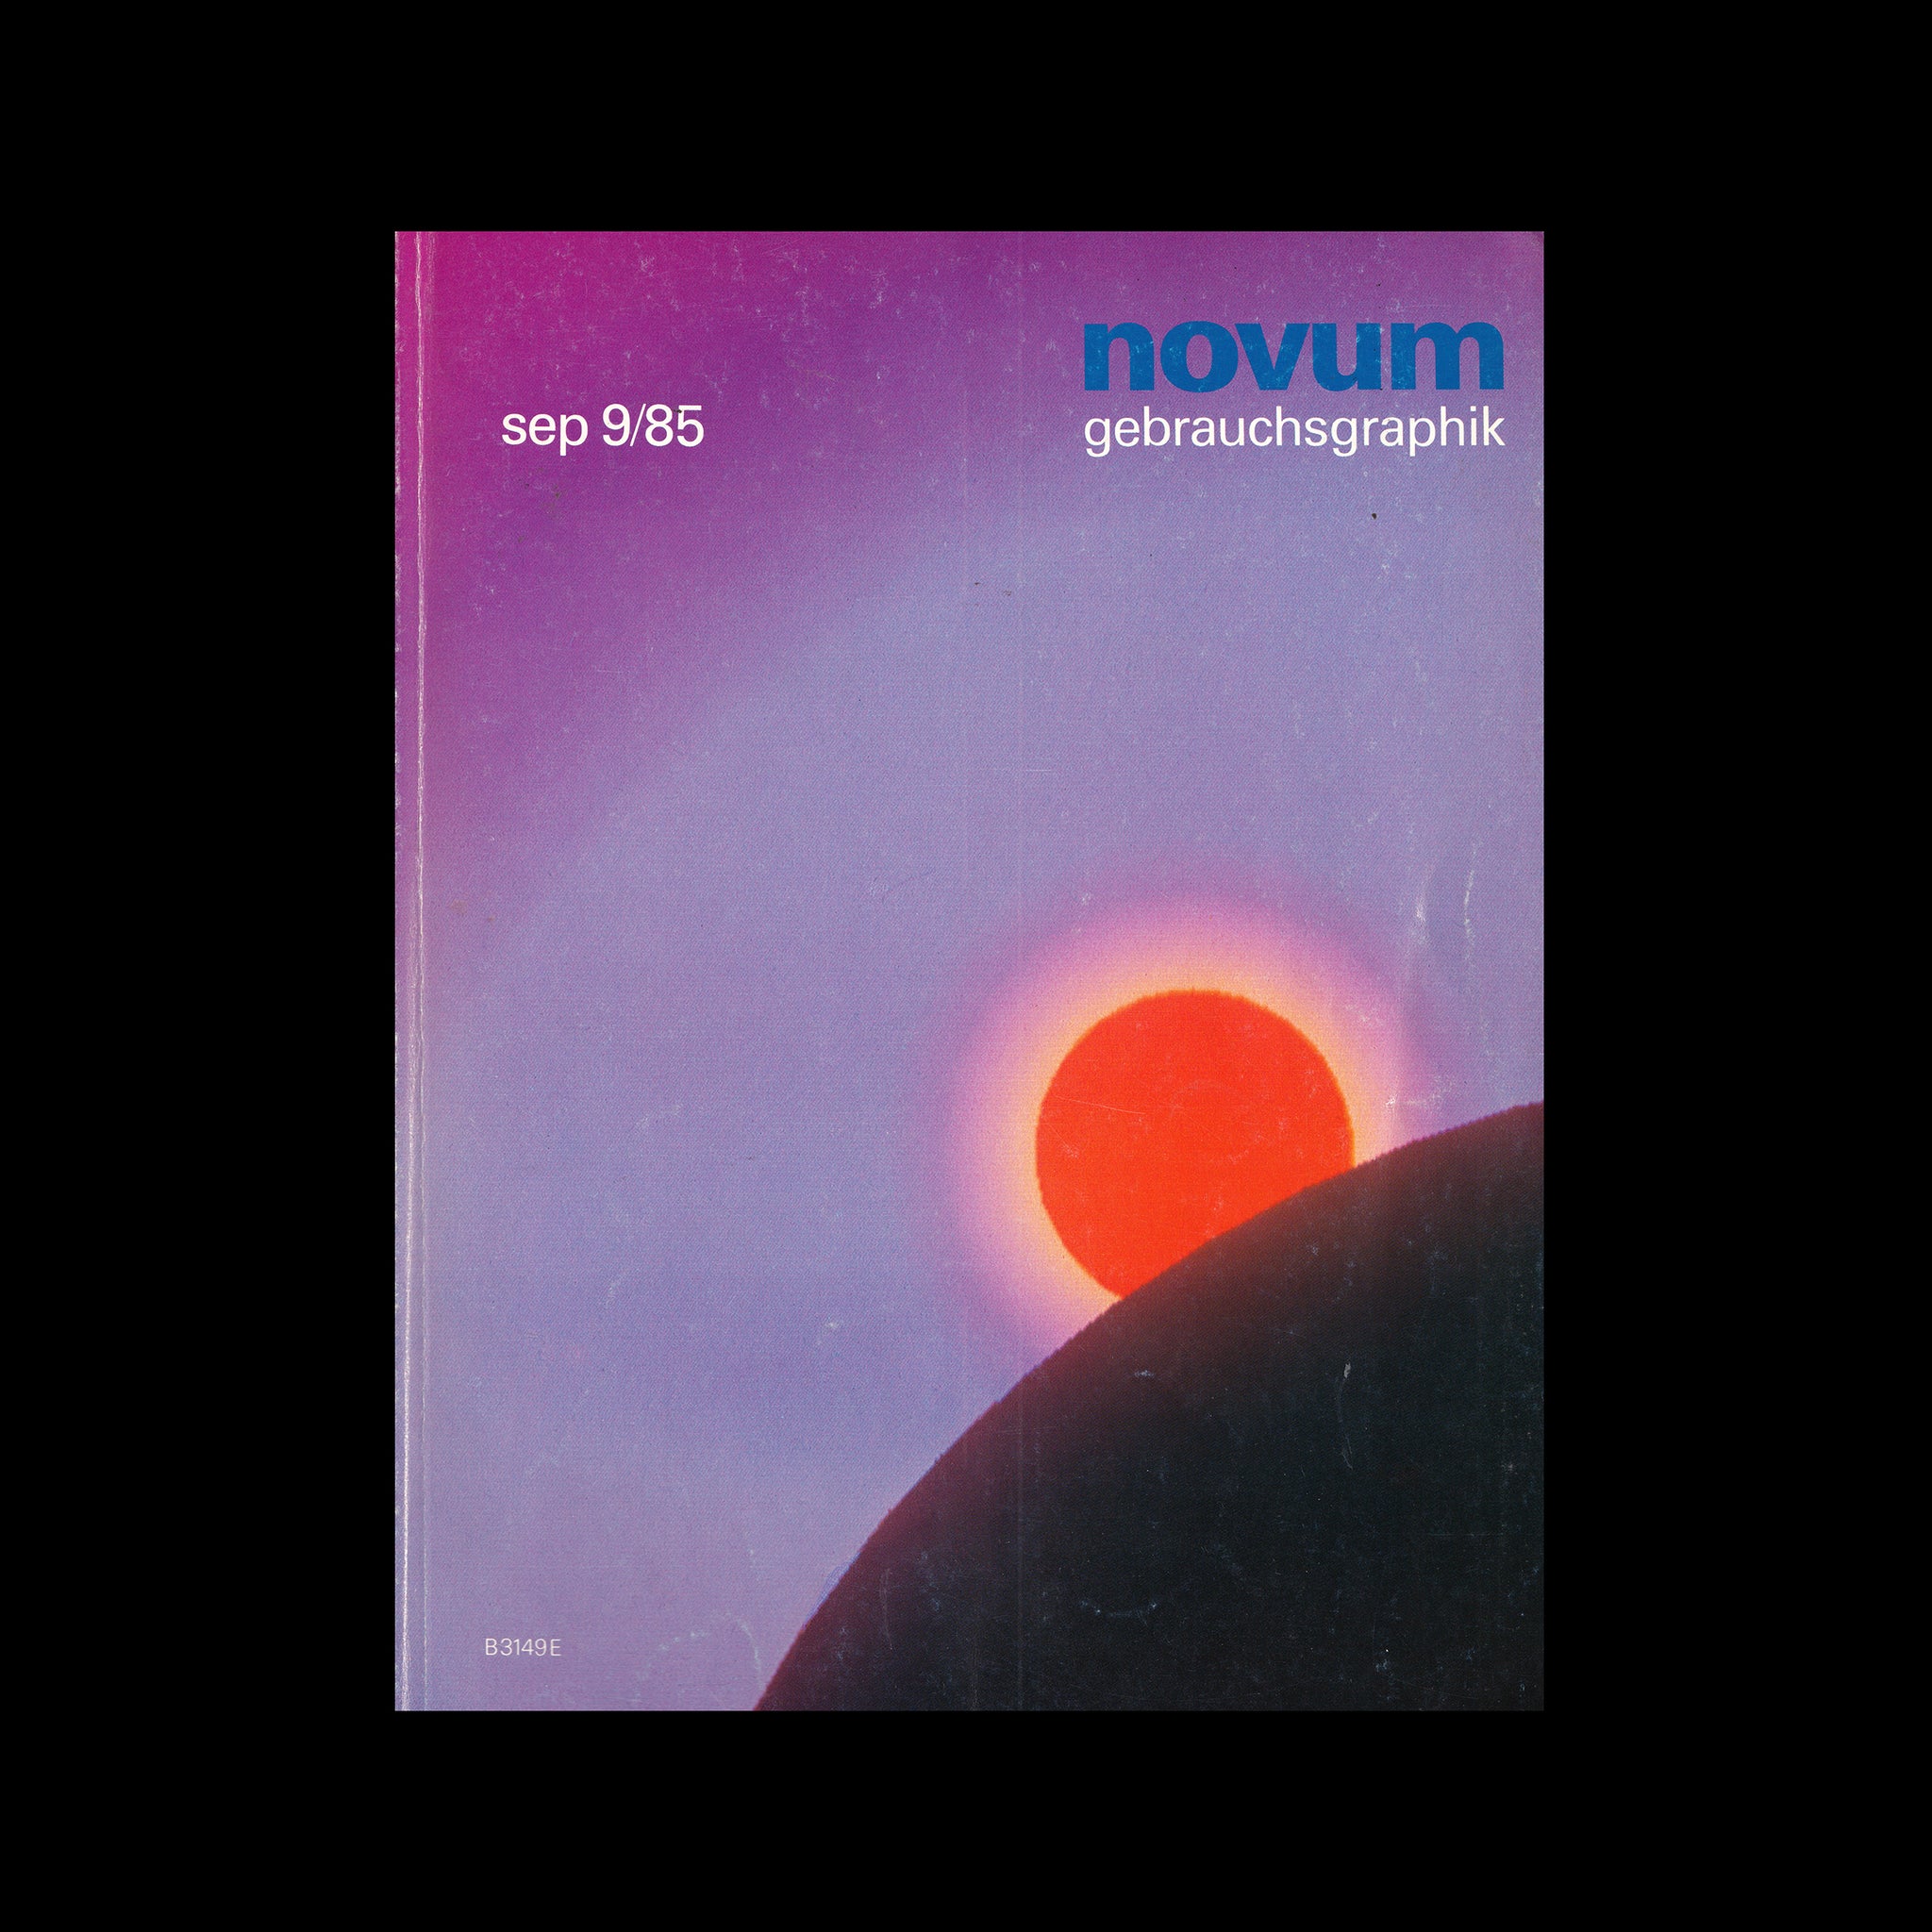 Novum Gebrauchsgraphik, September 1985